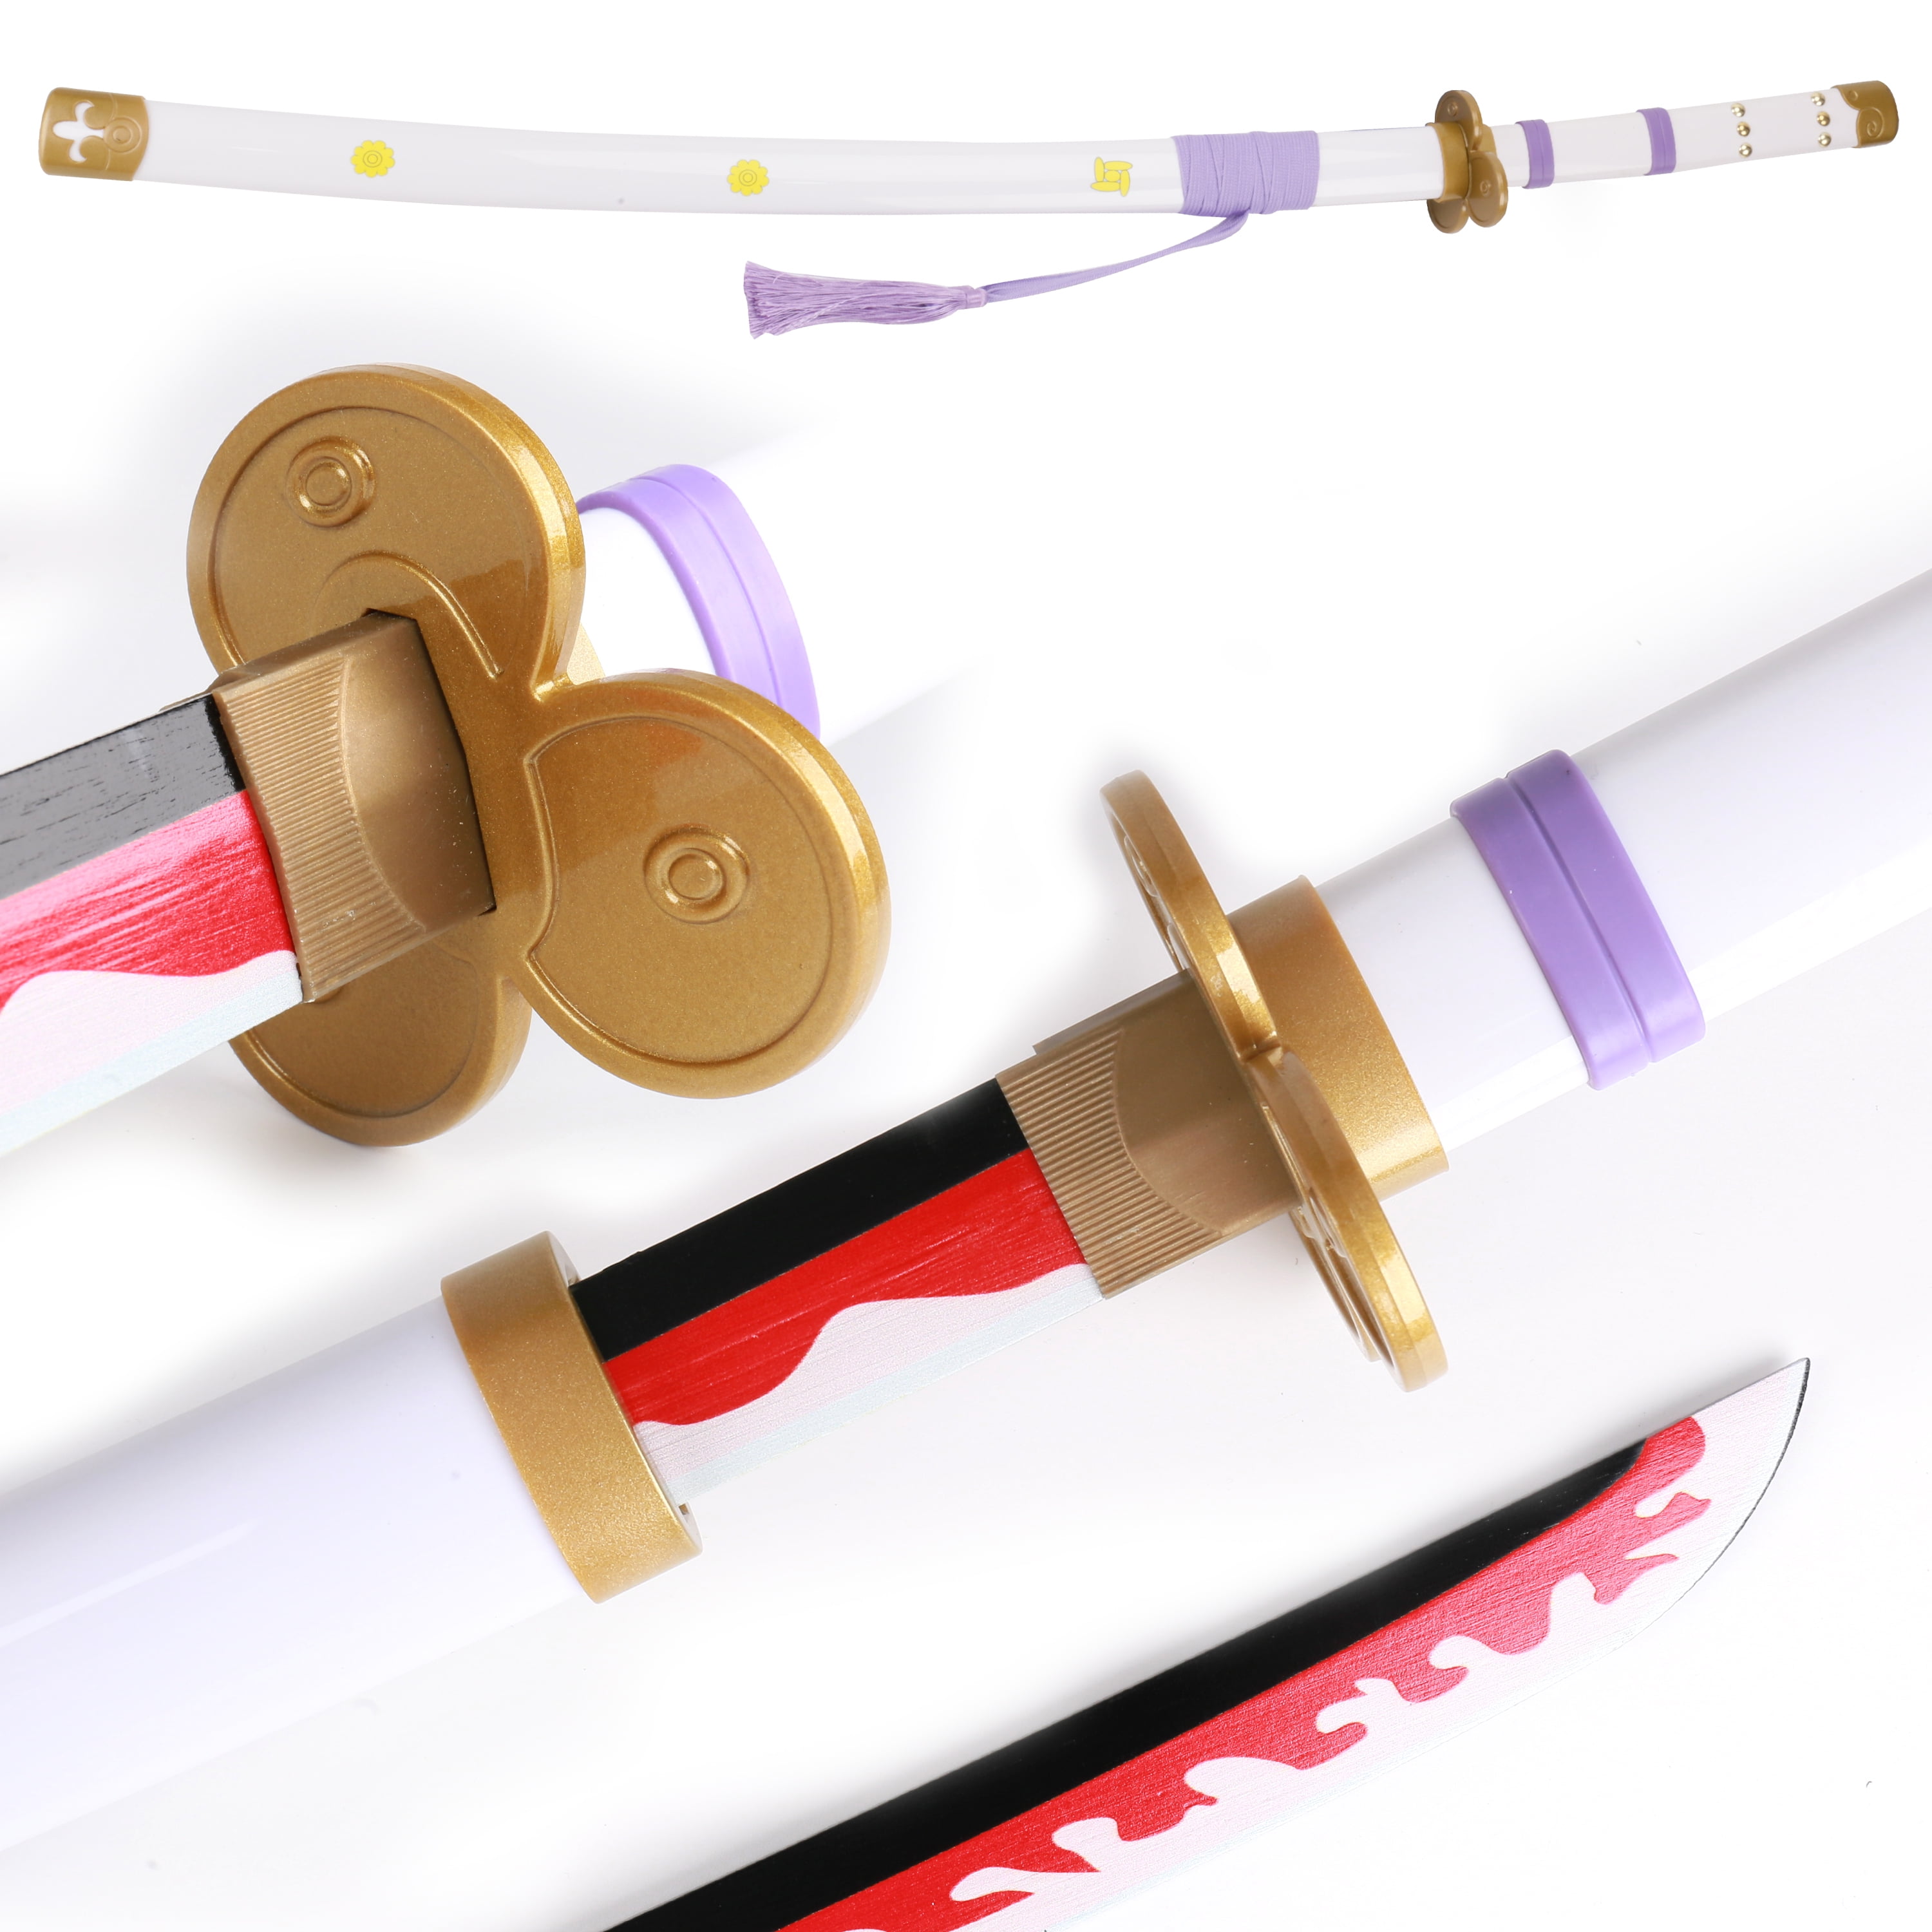 ONE PIECE Roronoa Zoro Sword Cosplay Prop Enma Ame no Habakiri Halloween  Gift